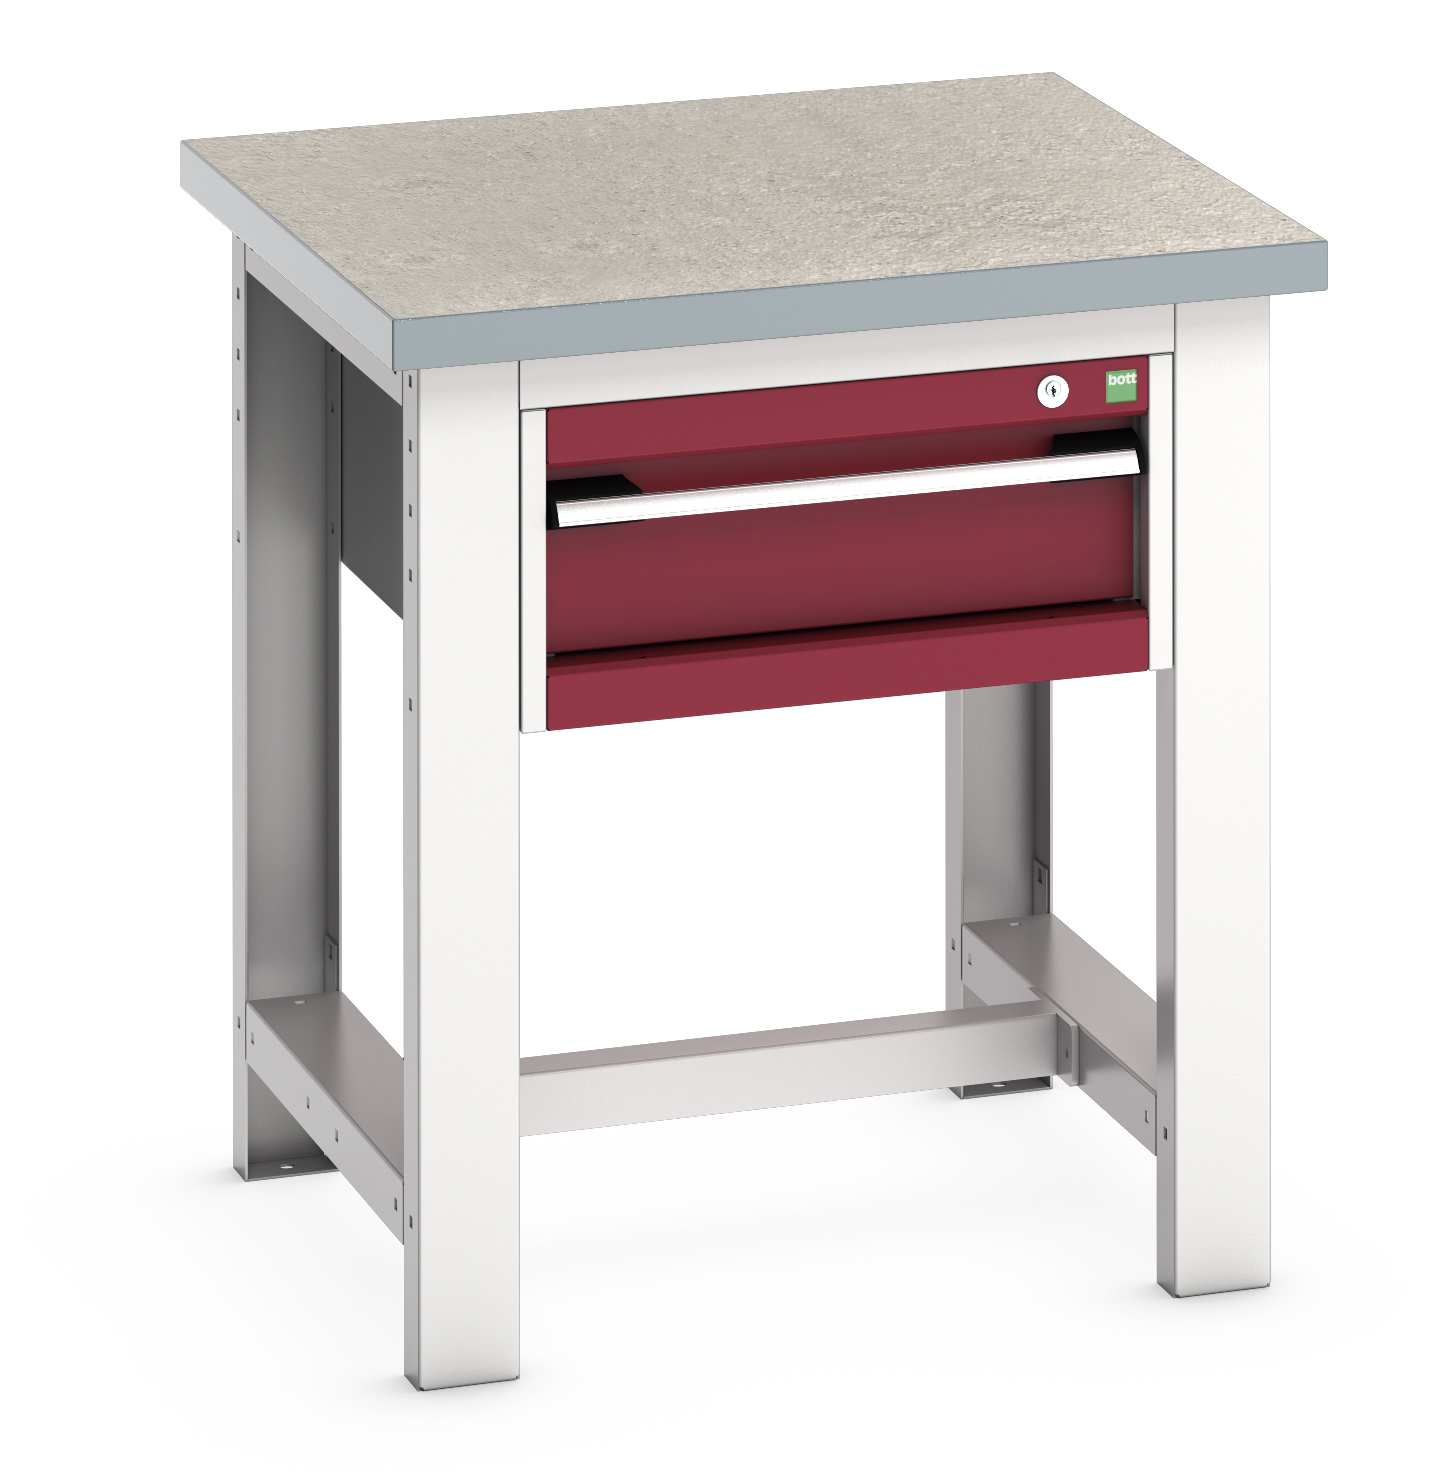 Bott Cubio Framework Workstand With 1 Drawer Cabinet - 41003523.24V